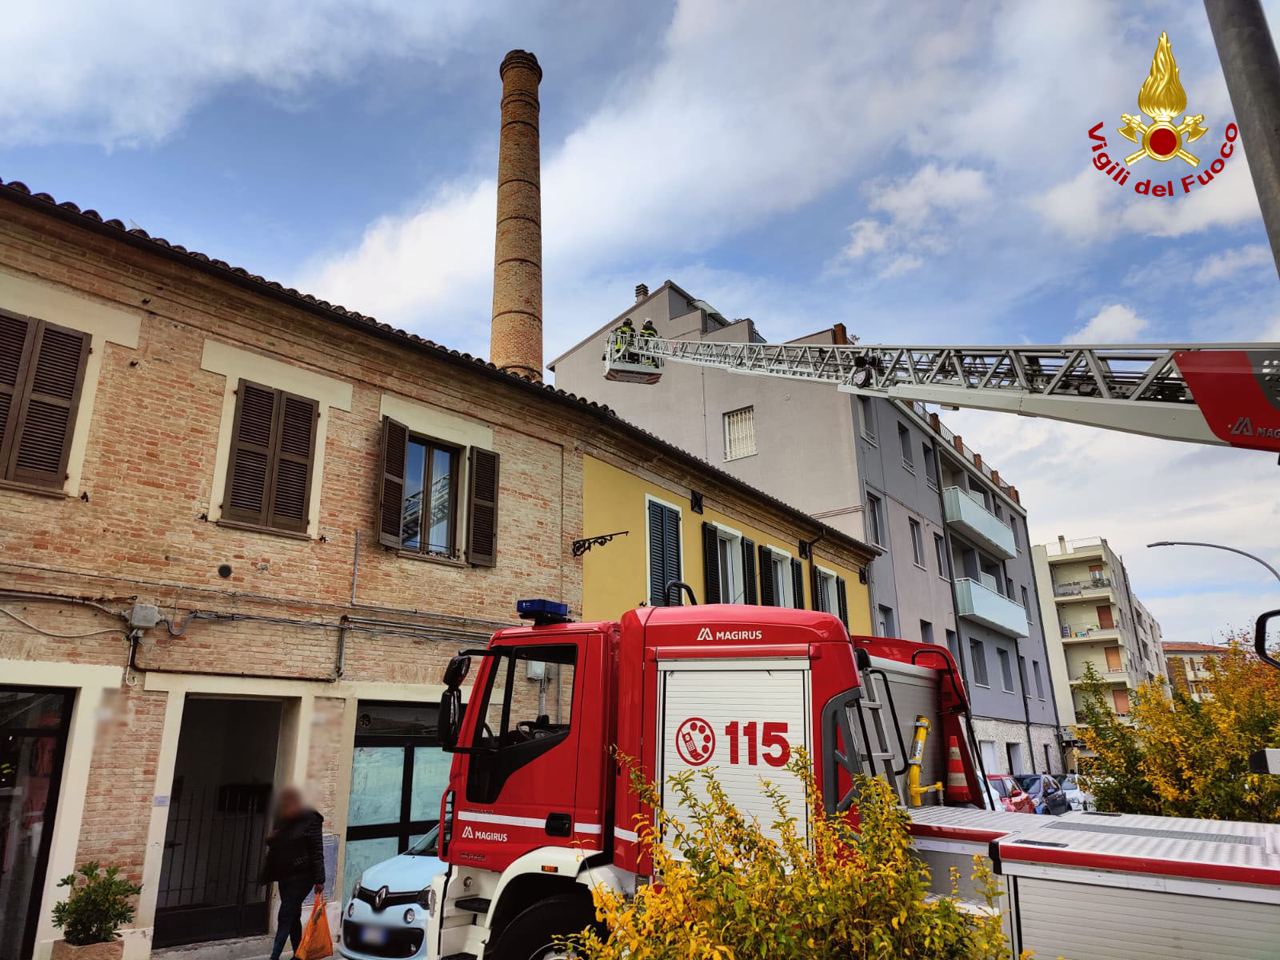 Pesaro – Lesioni alla ciminiera dopo il terremoto, sgomberate trenta persone e chiusa una via